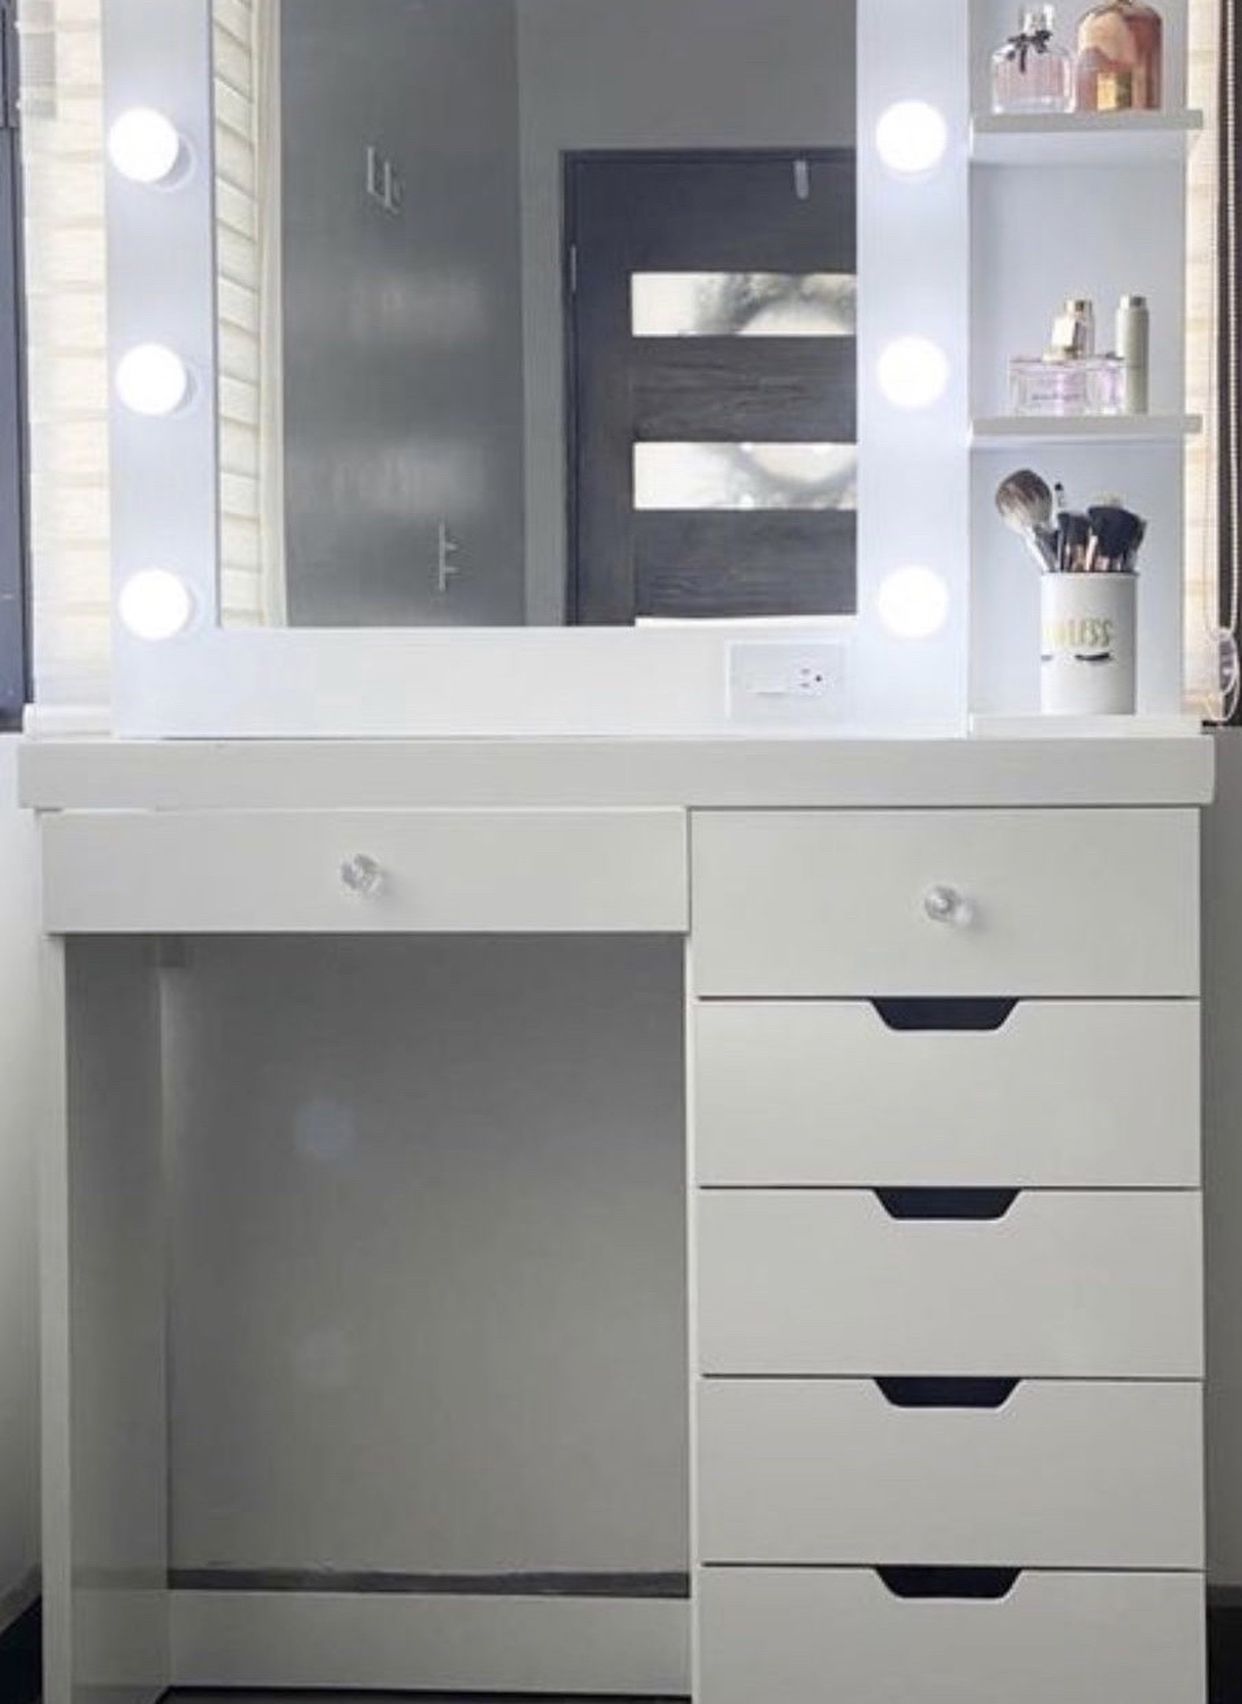 Vanity Set (Desk, mirror, shelve, lightbulbs)